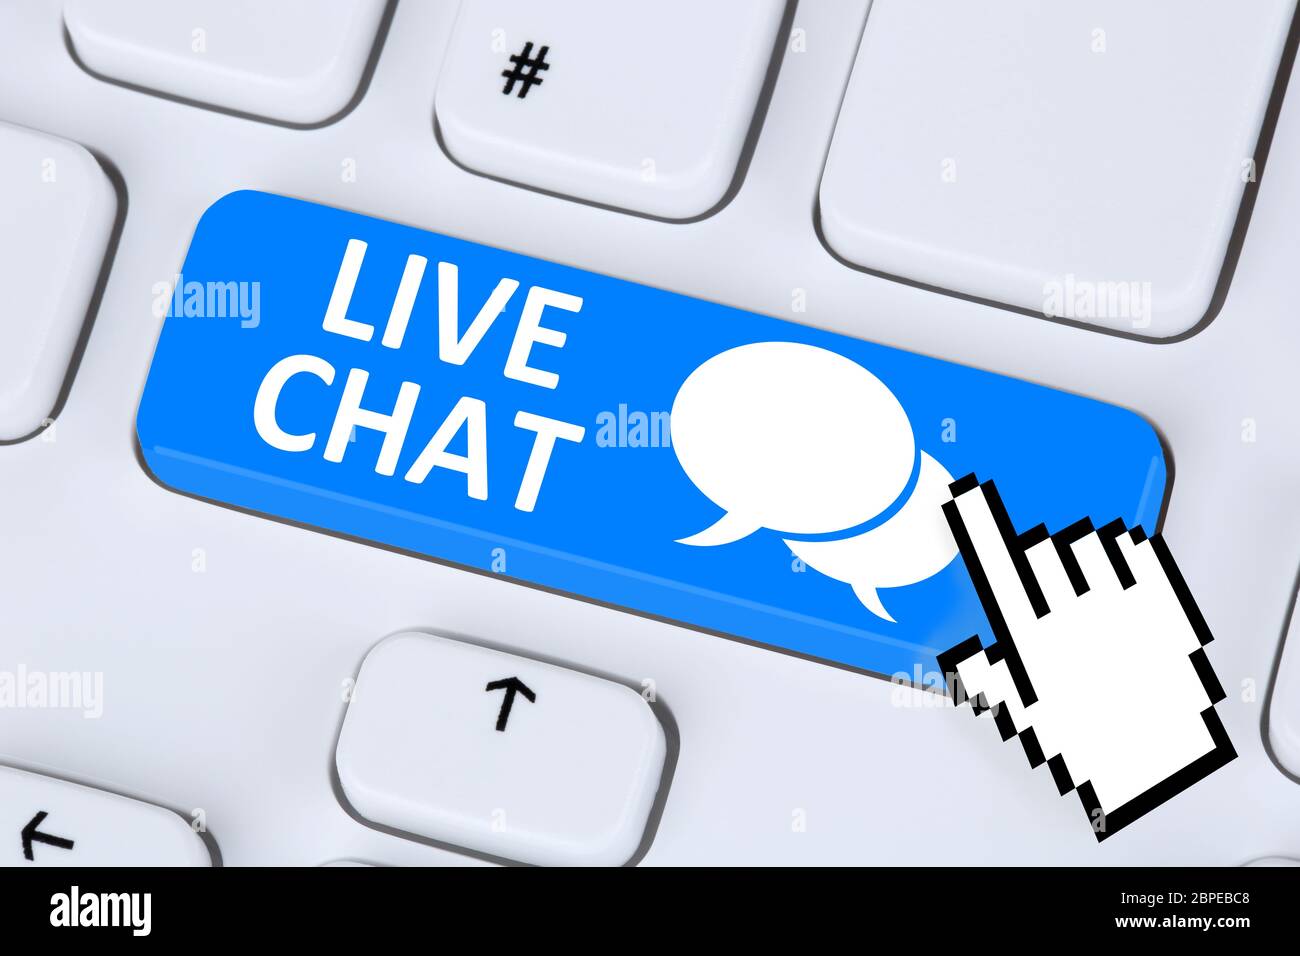 Live Chat Kontakt Kommunikation Service chatten Nachricht Message Kundendienst Information Stock Photo